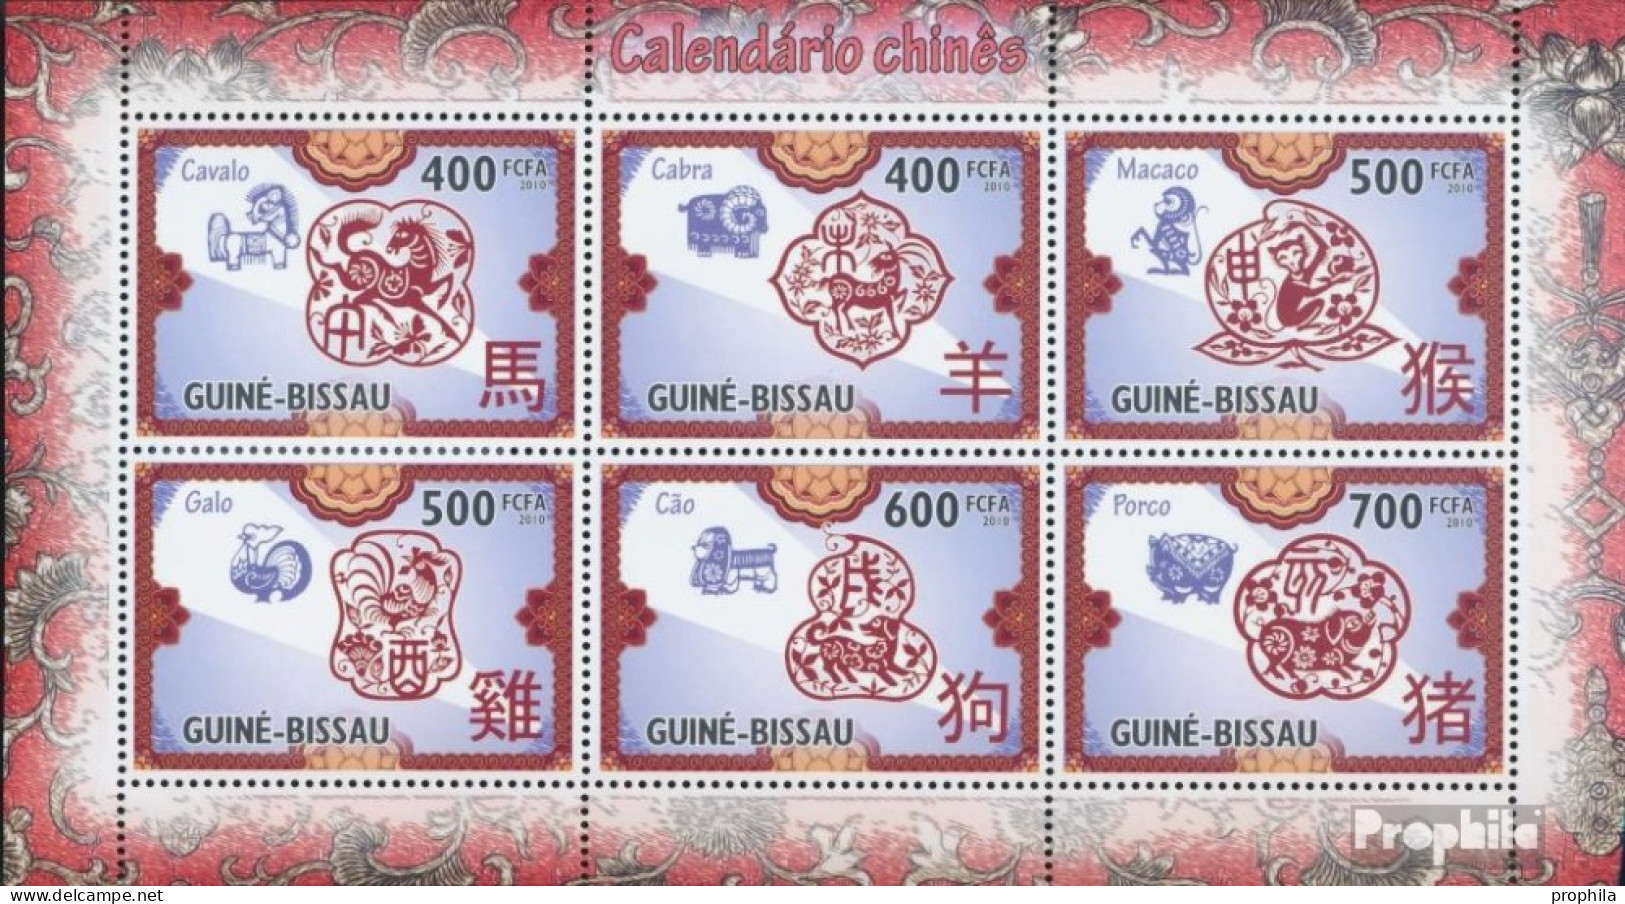 Guinea-Bissau 4779-4784 Kleinbogen (kompl. Ausgabe) Postfrisch 2010 Chinesischer Kalender - Guinée-Bissau